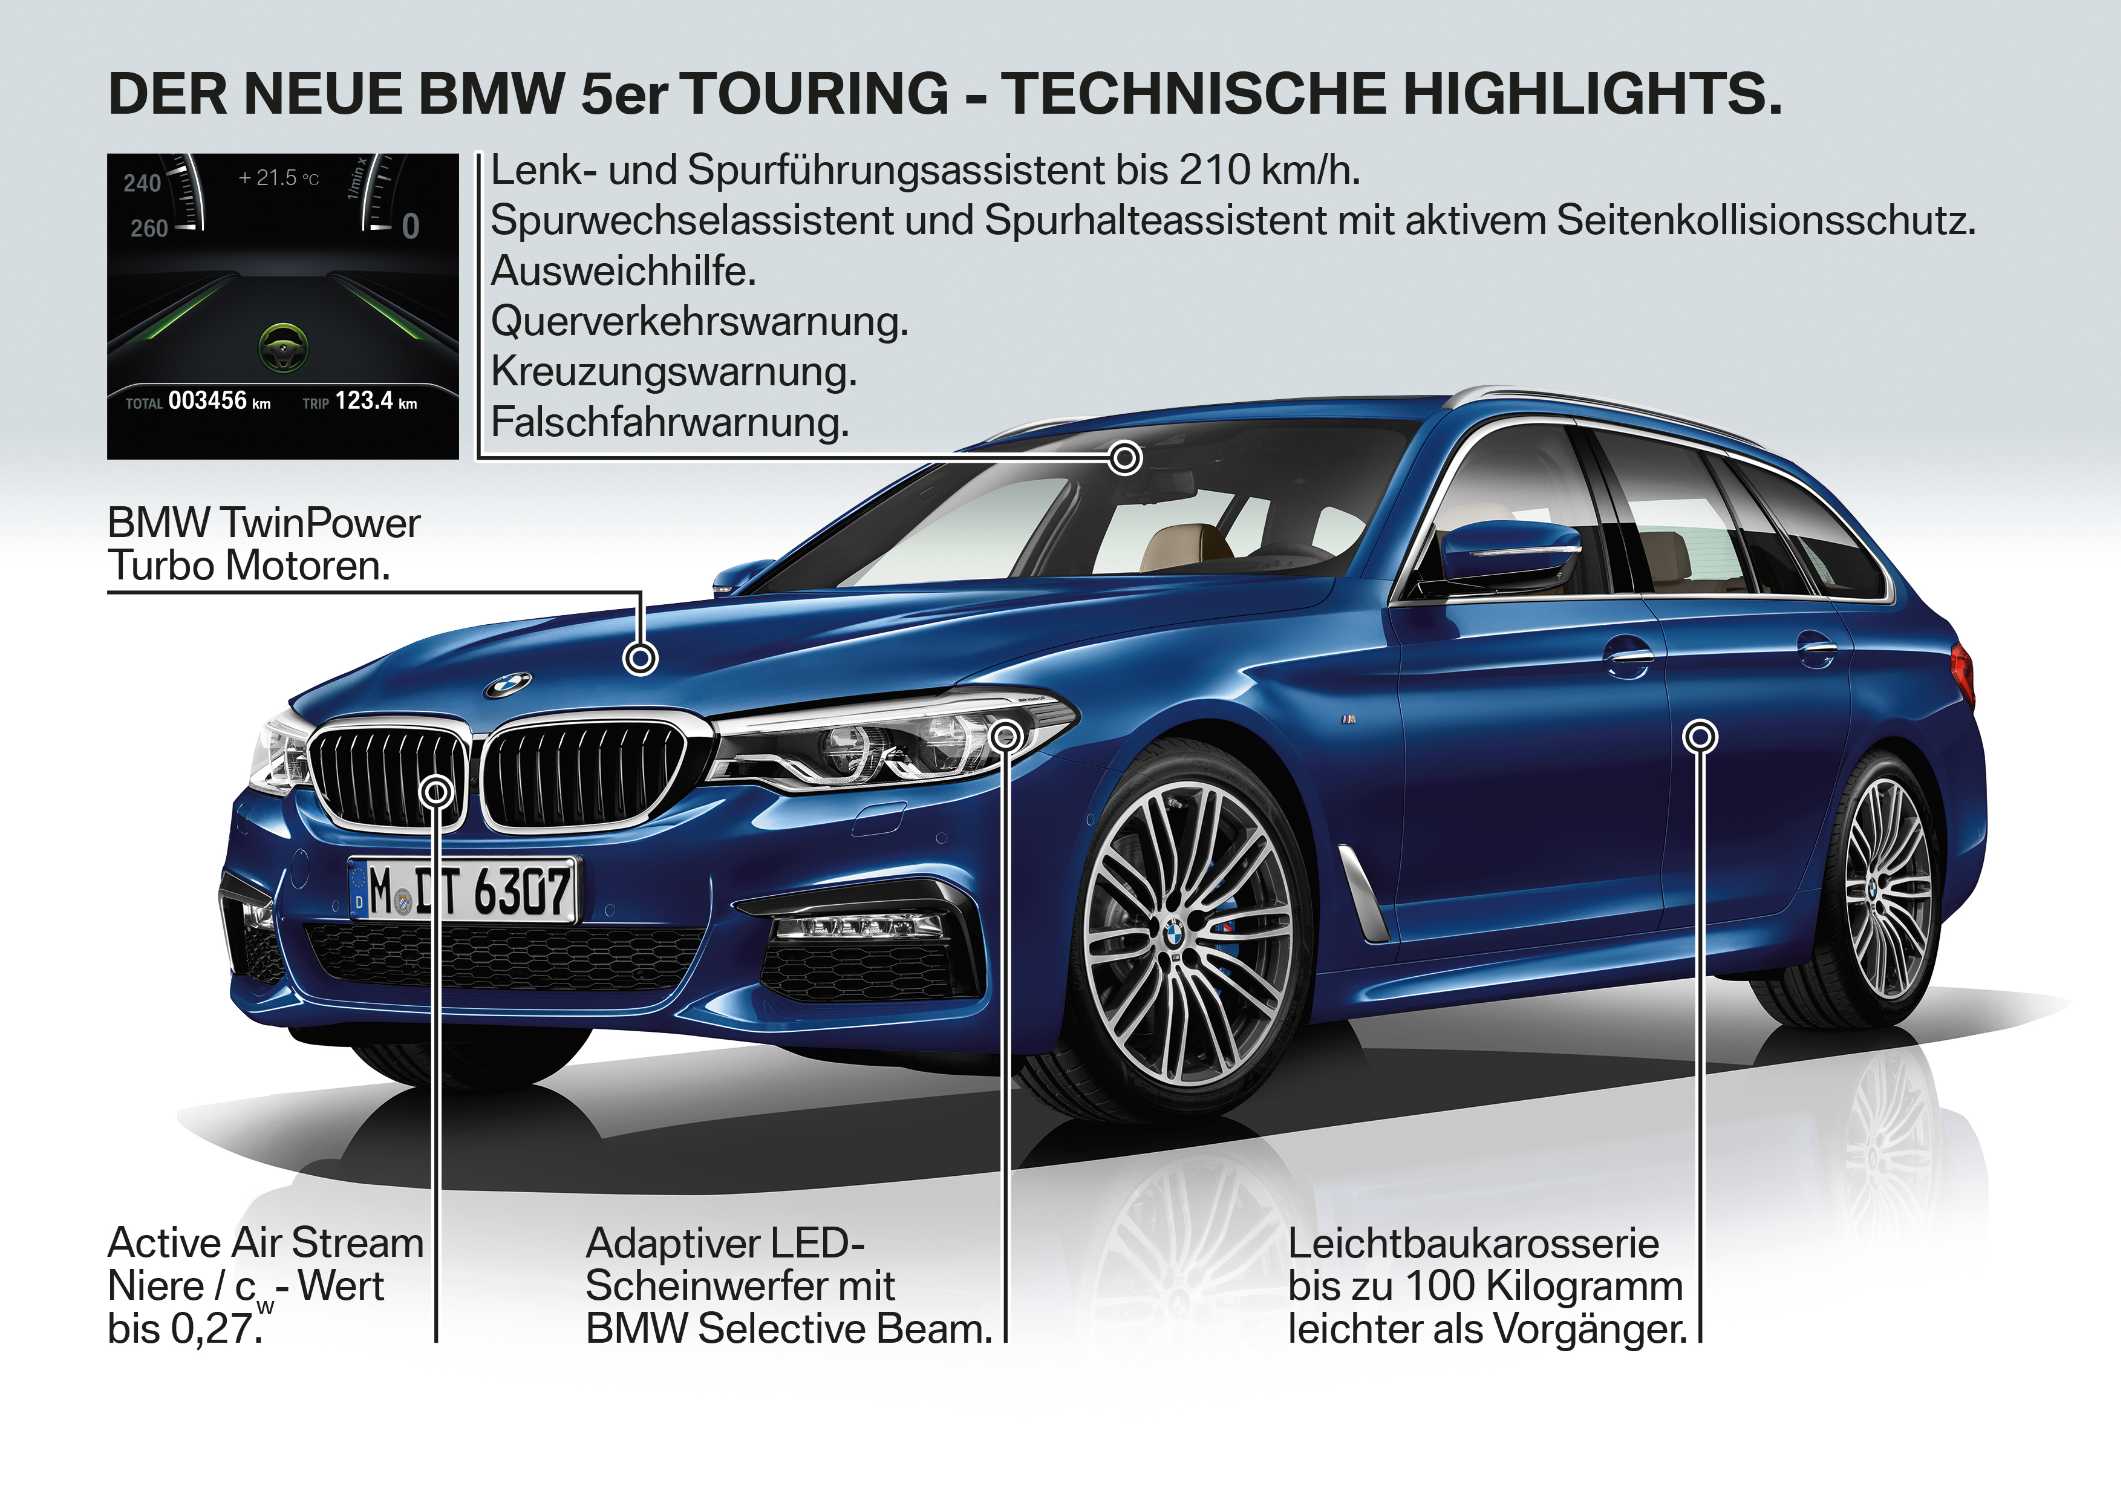 Der neue BMW 5er Touring.